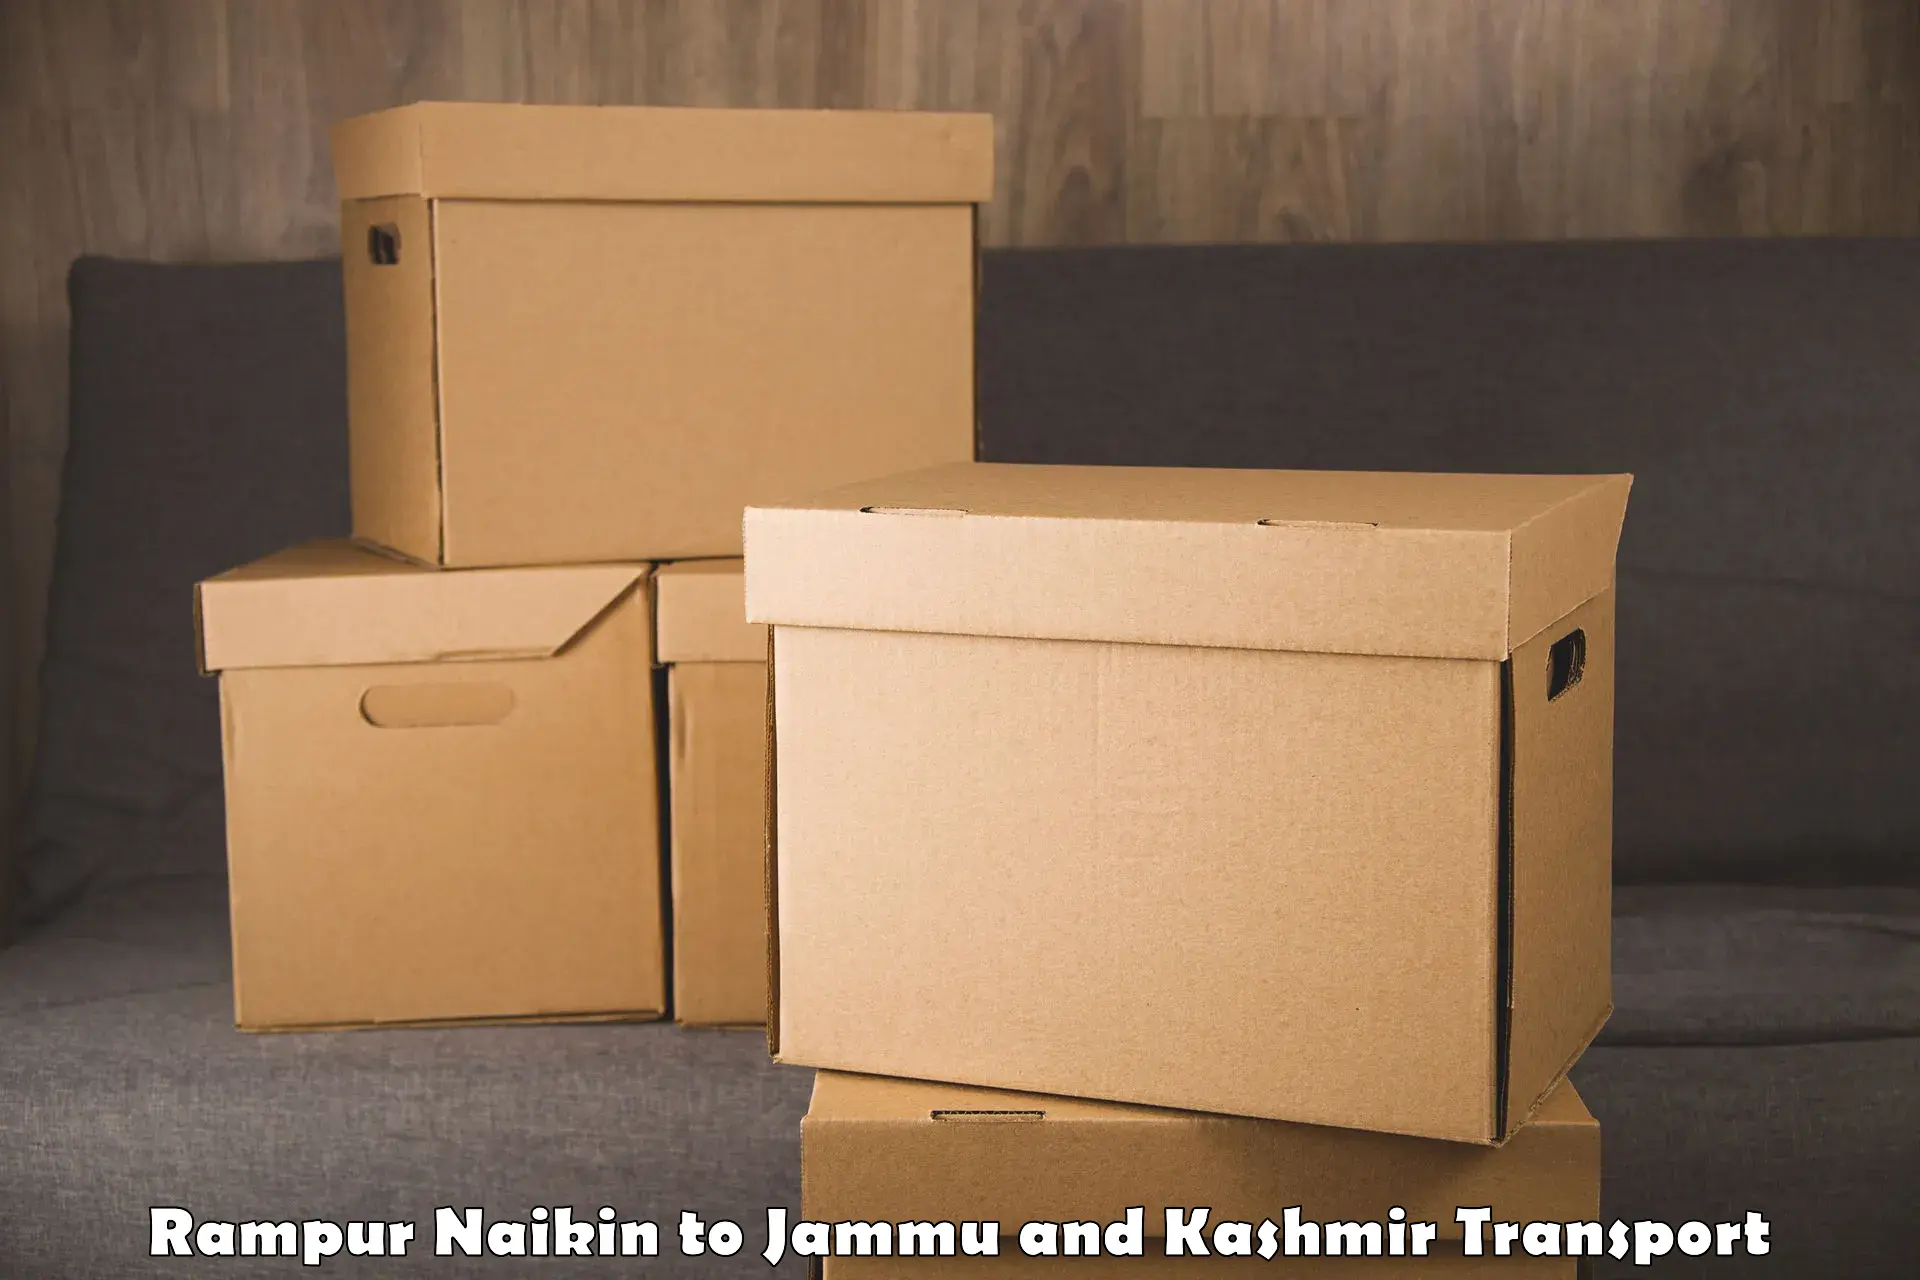 Vehicle parcel service Rampur Naikin to Srinagar Kashmir